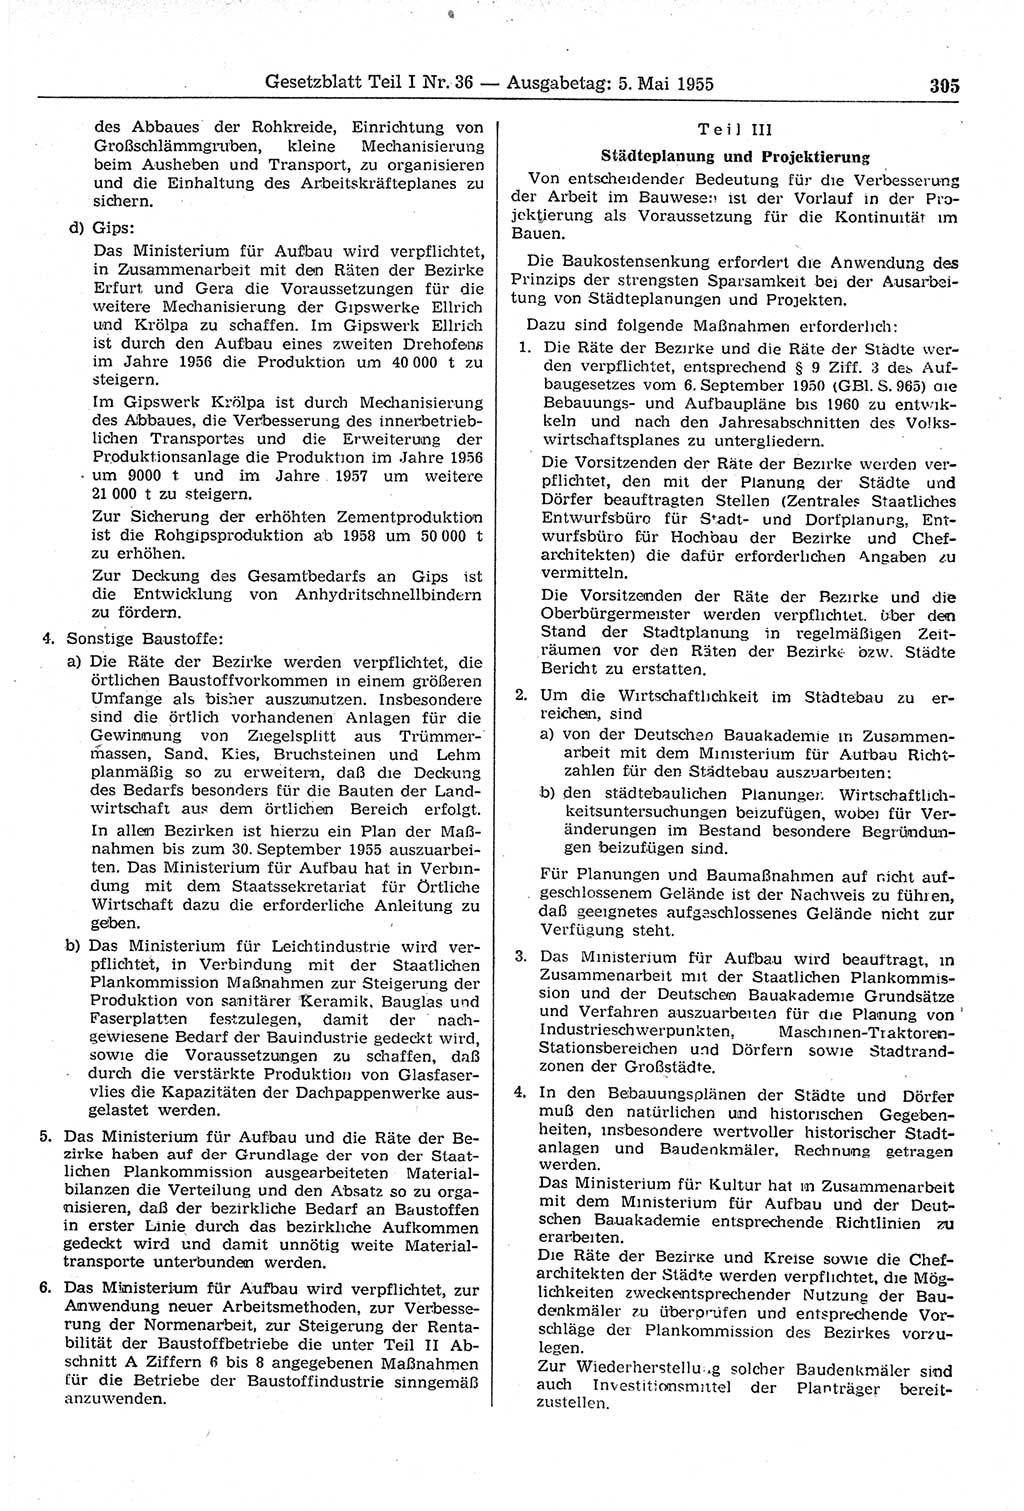 Gesetzblatt (GBl.) der Deutschen Demokratischen Republik (DDR) Teil Ⅰ 1955, Seite 305 (GBl. DDR Ⅰ 1955, S. 305)